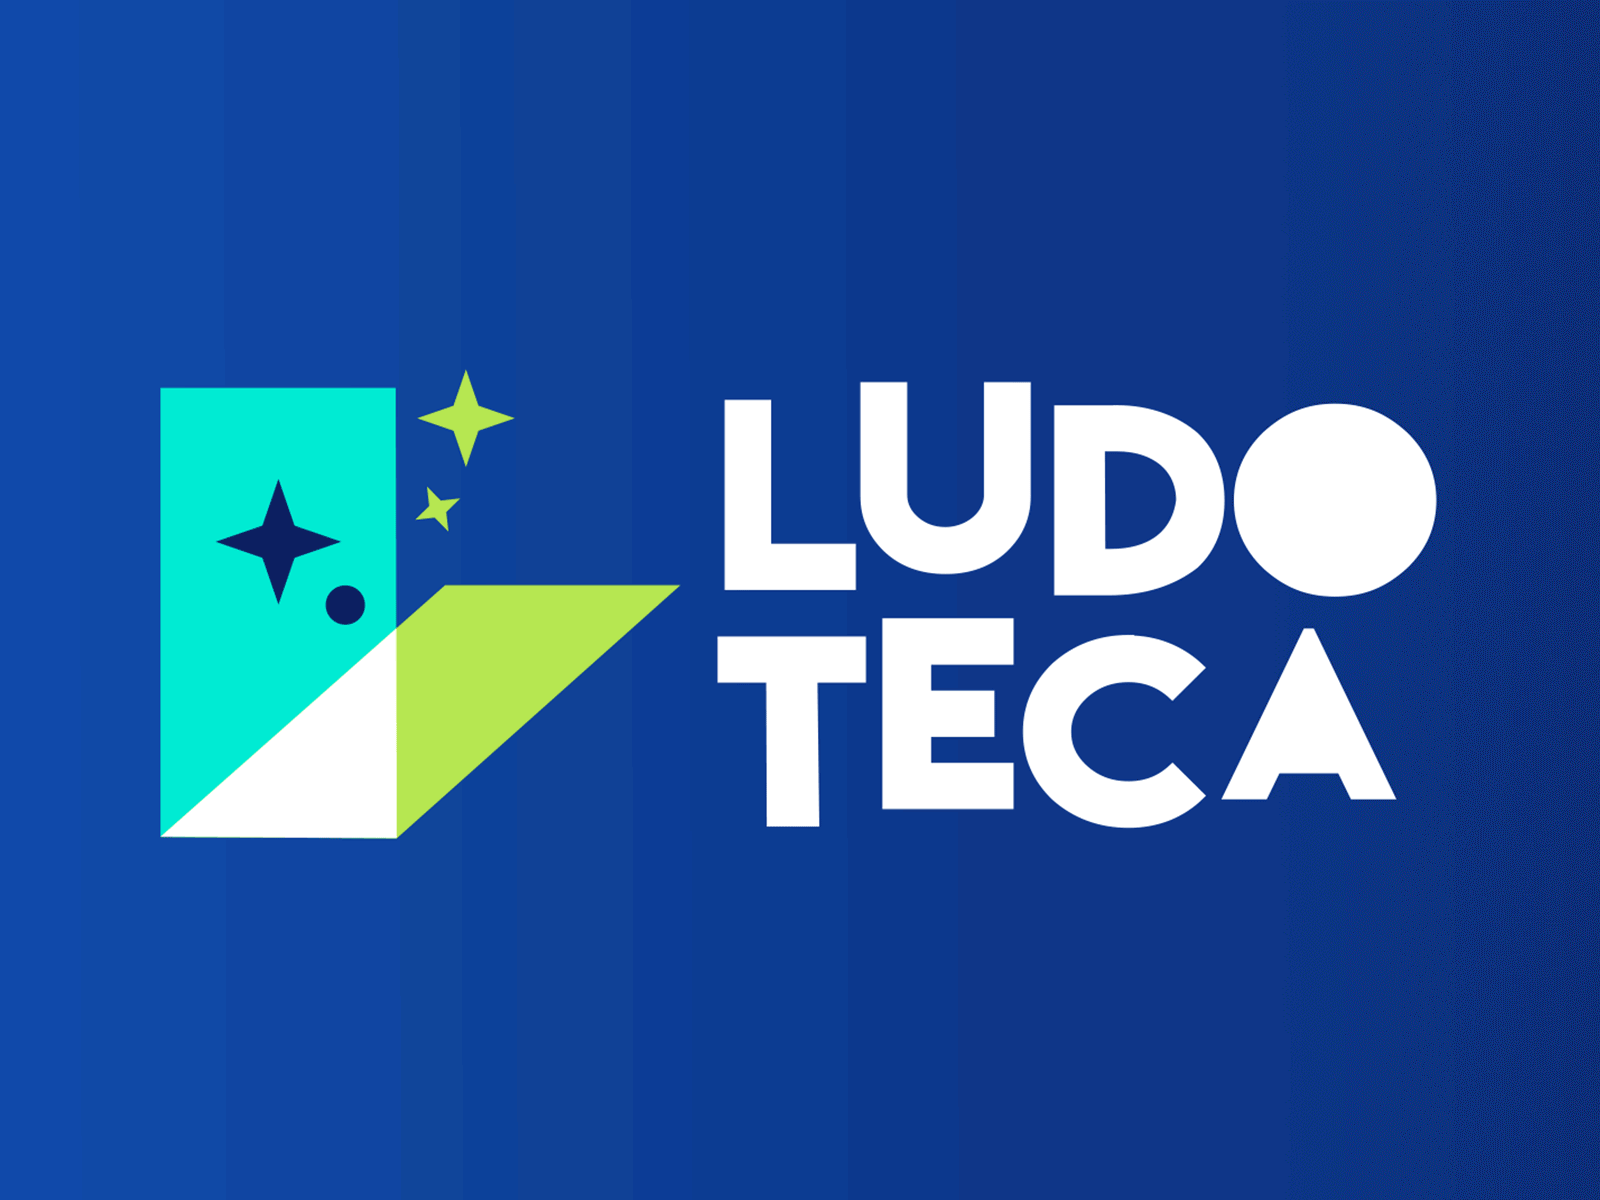 Ludoteca - Logo animation animation branding icon illustration logo motion